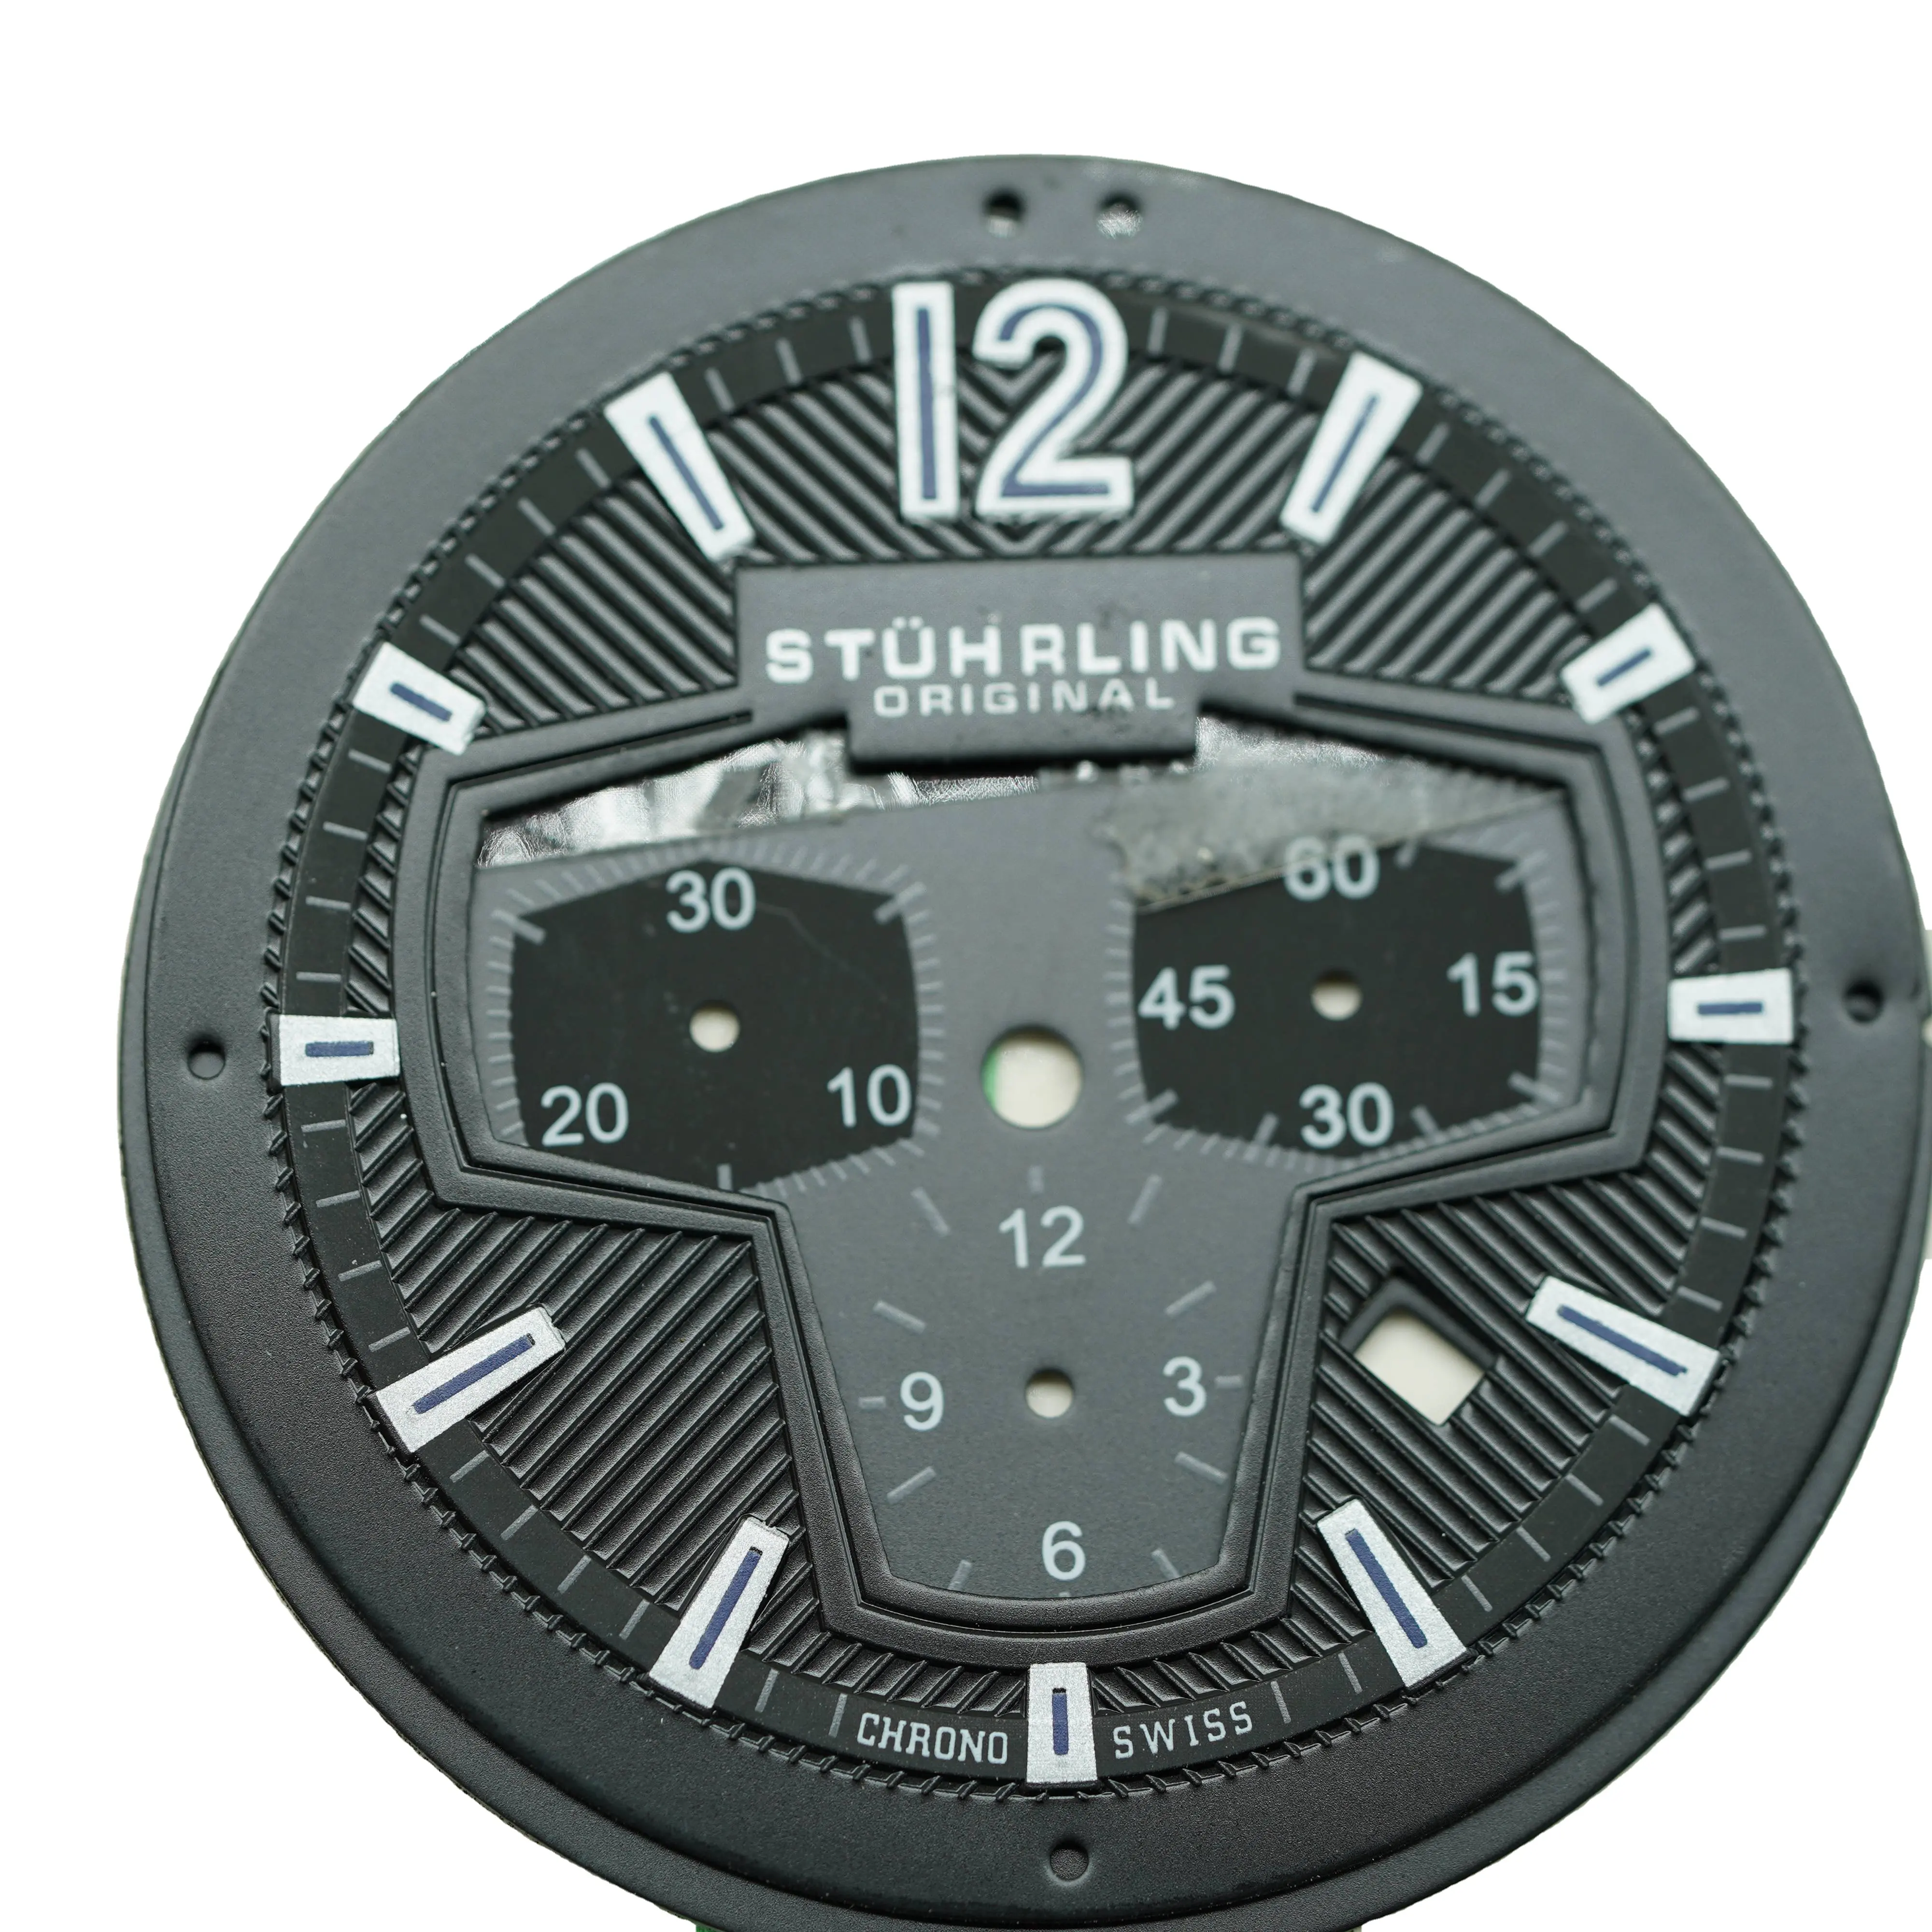 หน้าปัดนาฬิกา29มม. ใส่ชิ้นส่วนพอดีสำหรับ Nh35/Nh36การเคลื่อนไหวอัตโนมัติสำหรับนาฬิกาสีเขียวอุปกรณ์ส่องสว่าง